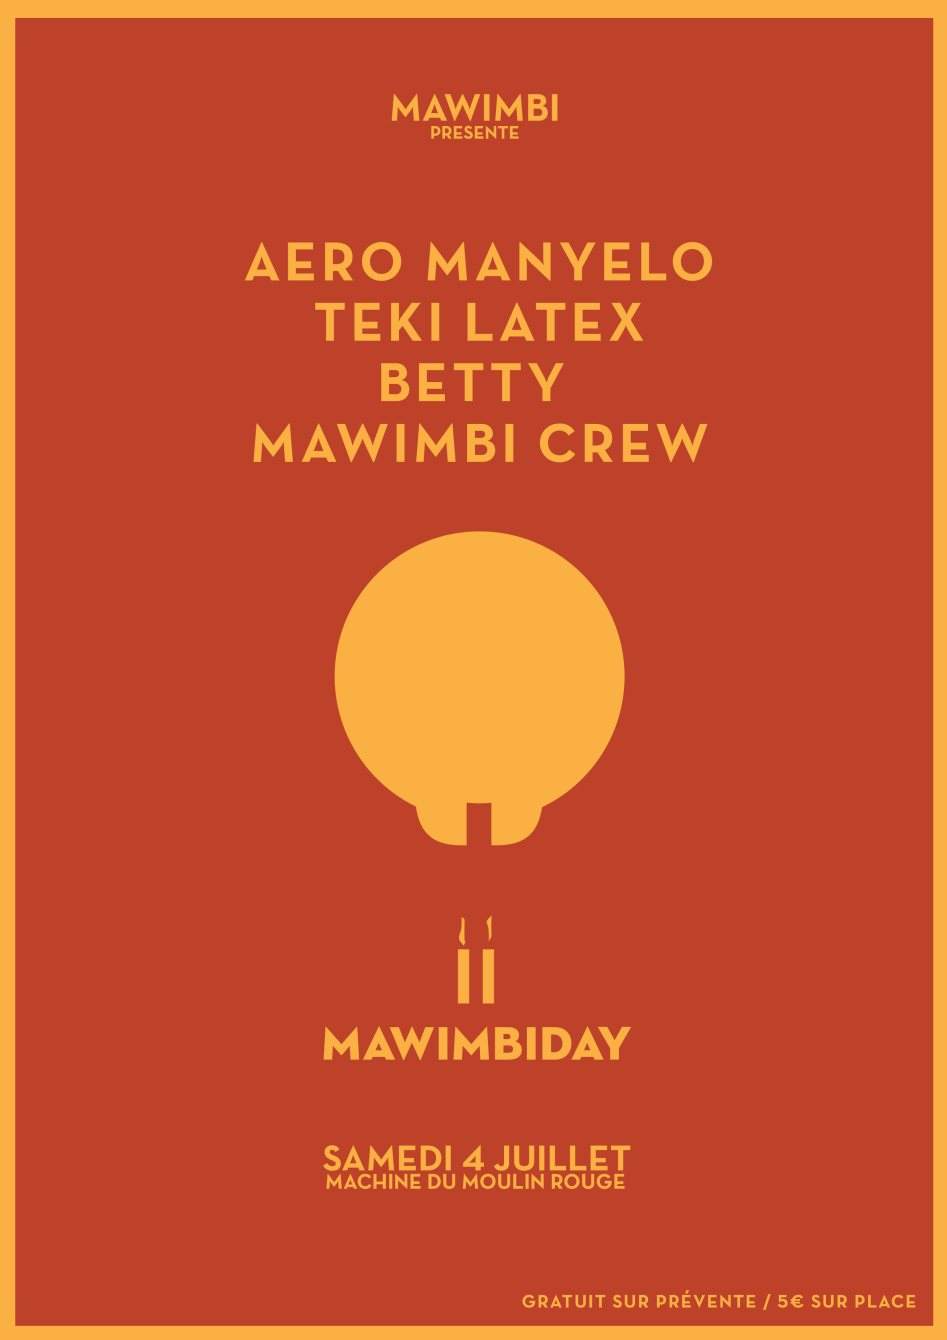 Mawimbiday #2 with Aero Manyelo, Teki Latex, Betty & Mawimbi Crew - Página frontal